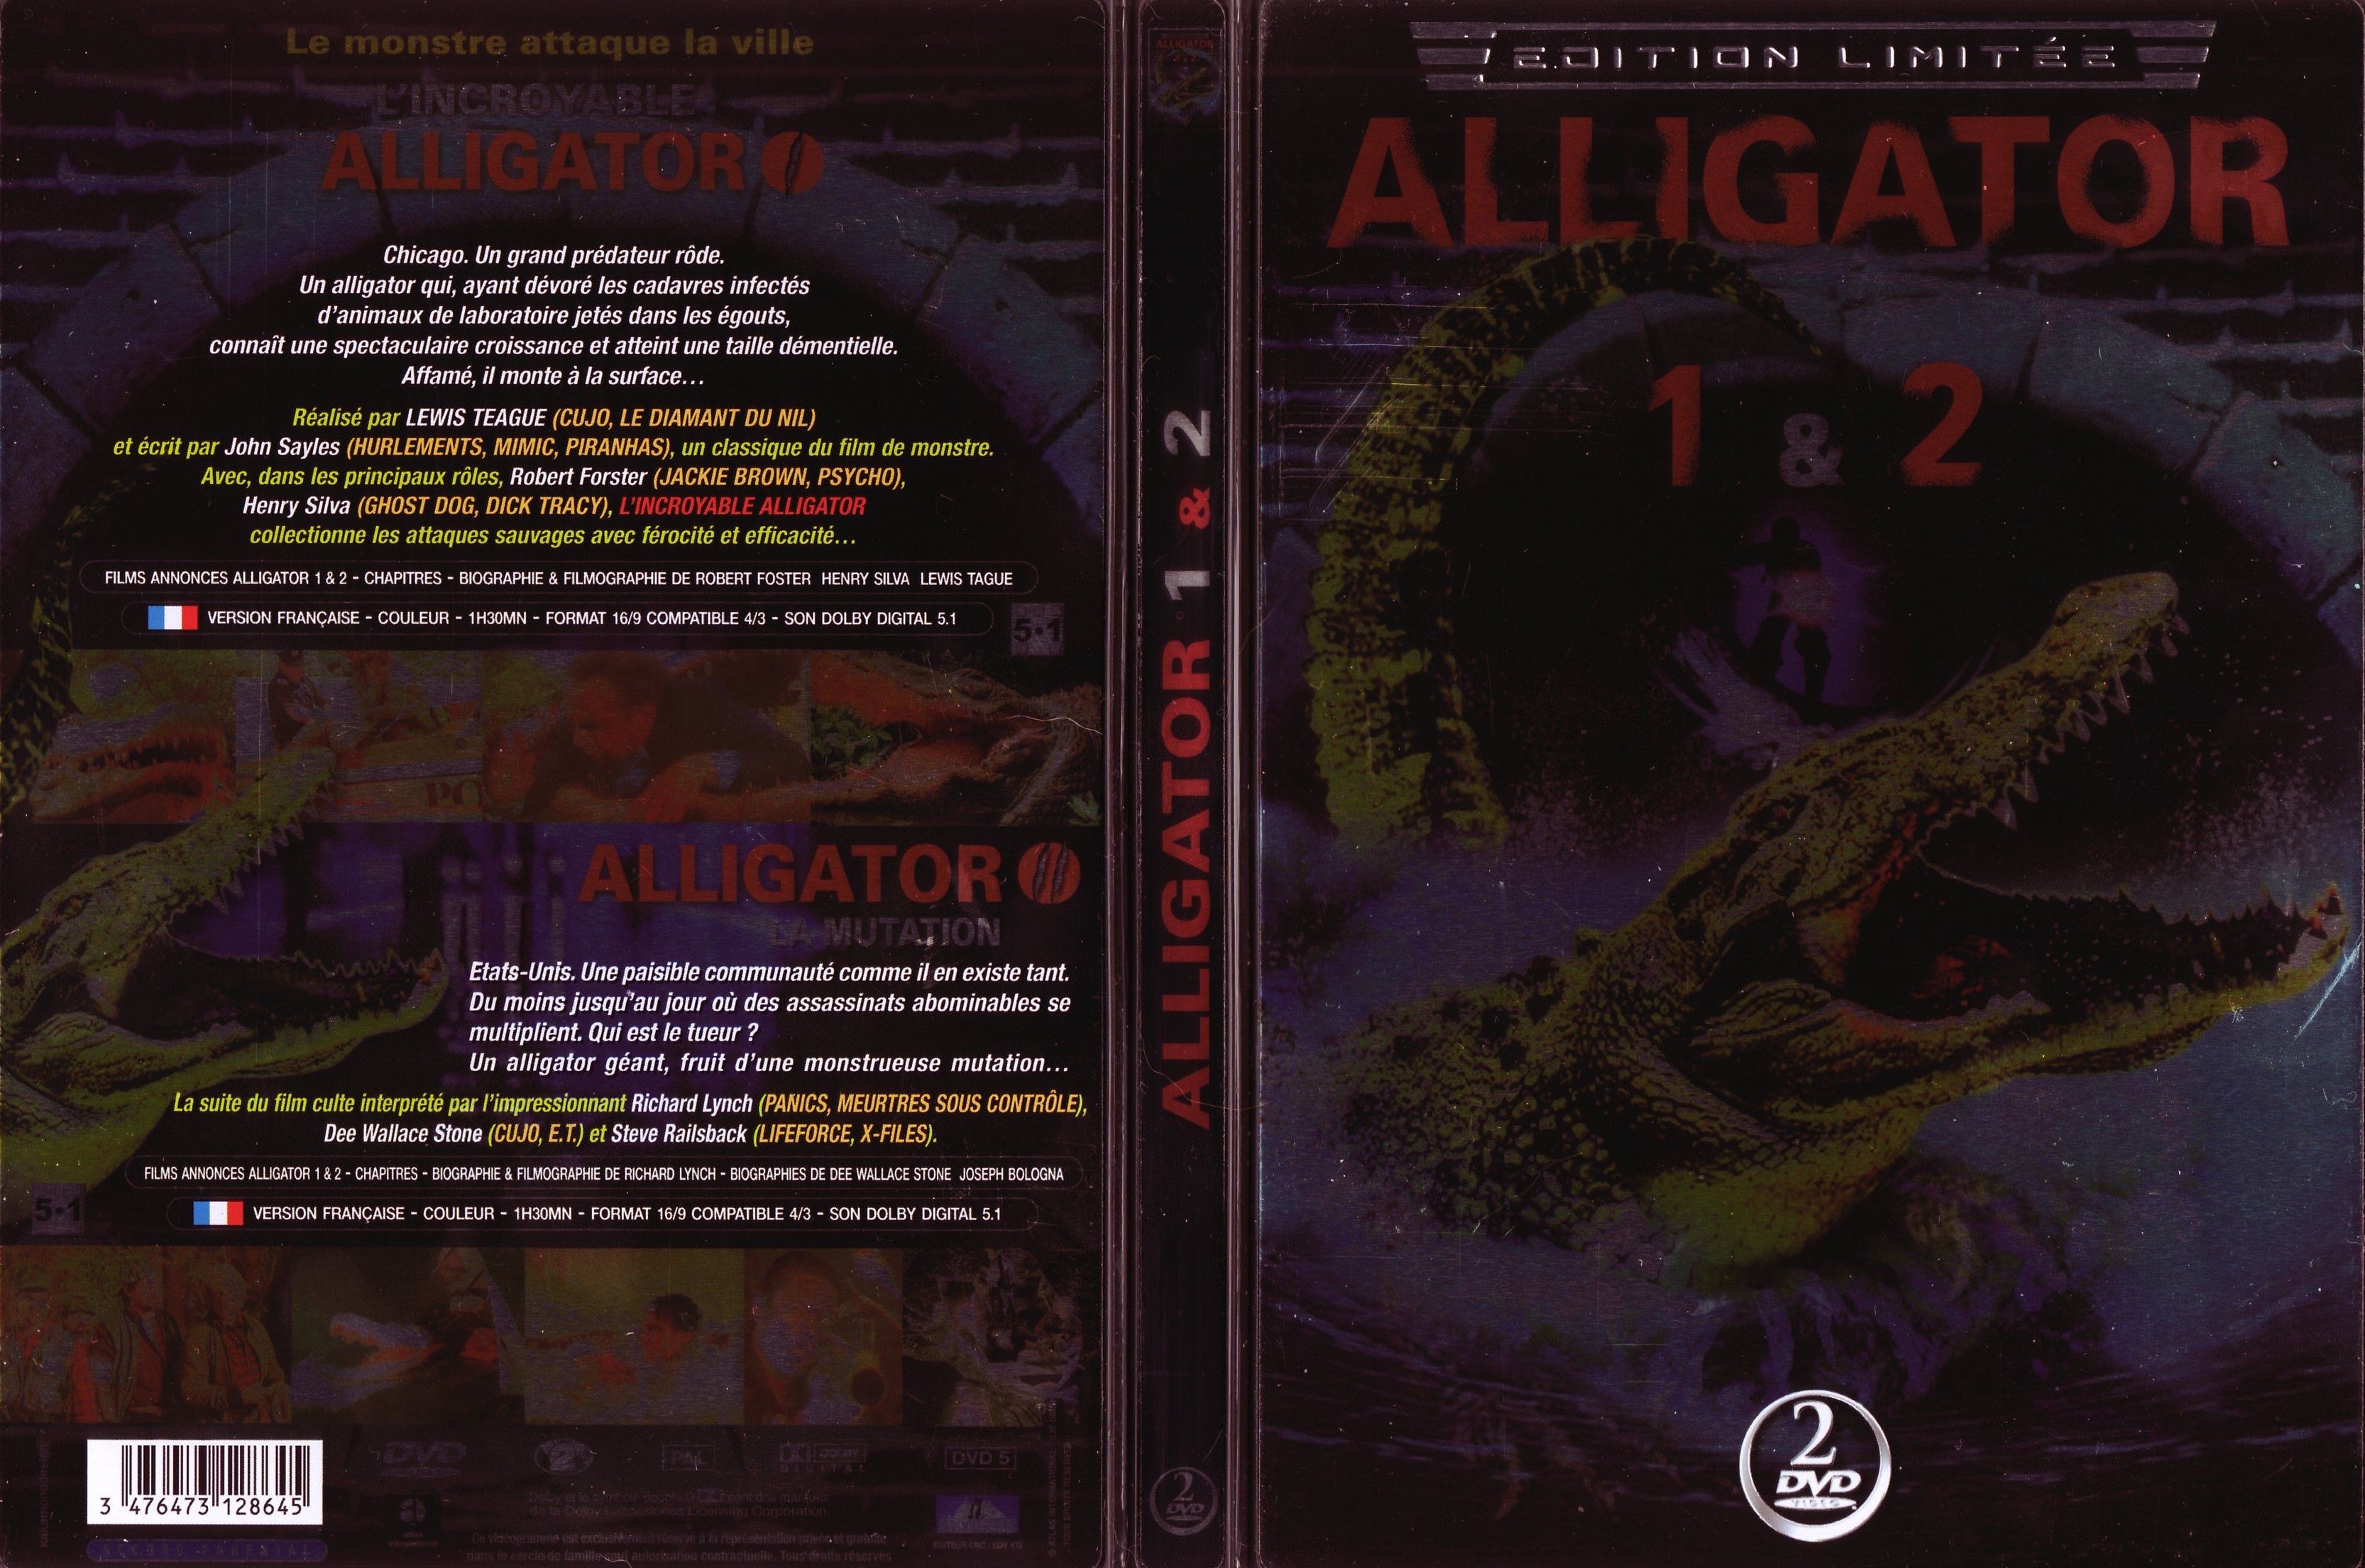 Jaquette DVD Alligator 1 et 2 v2